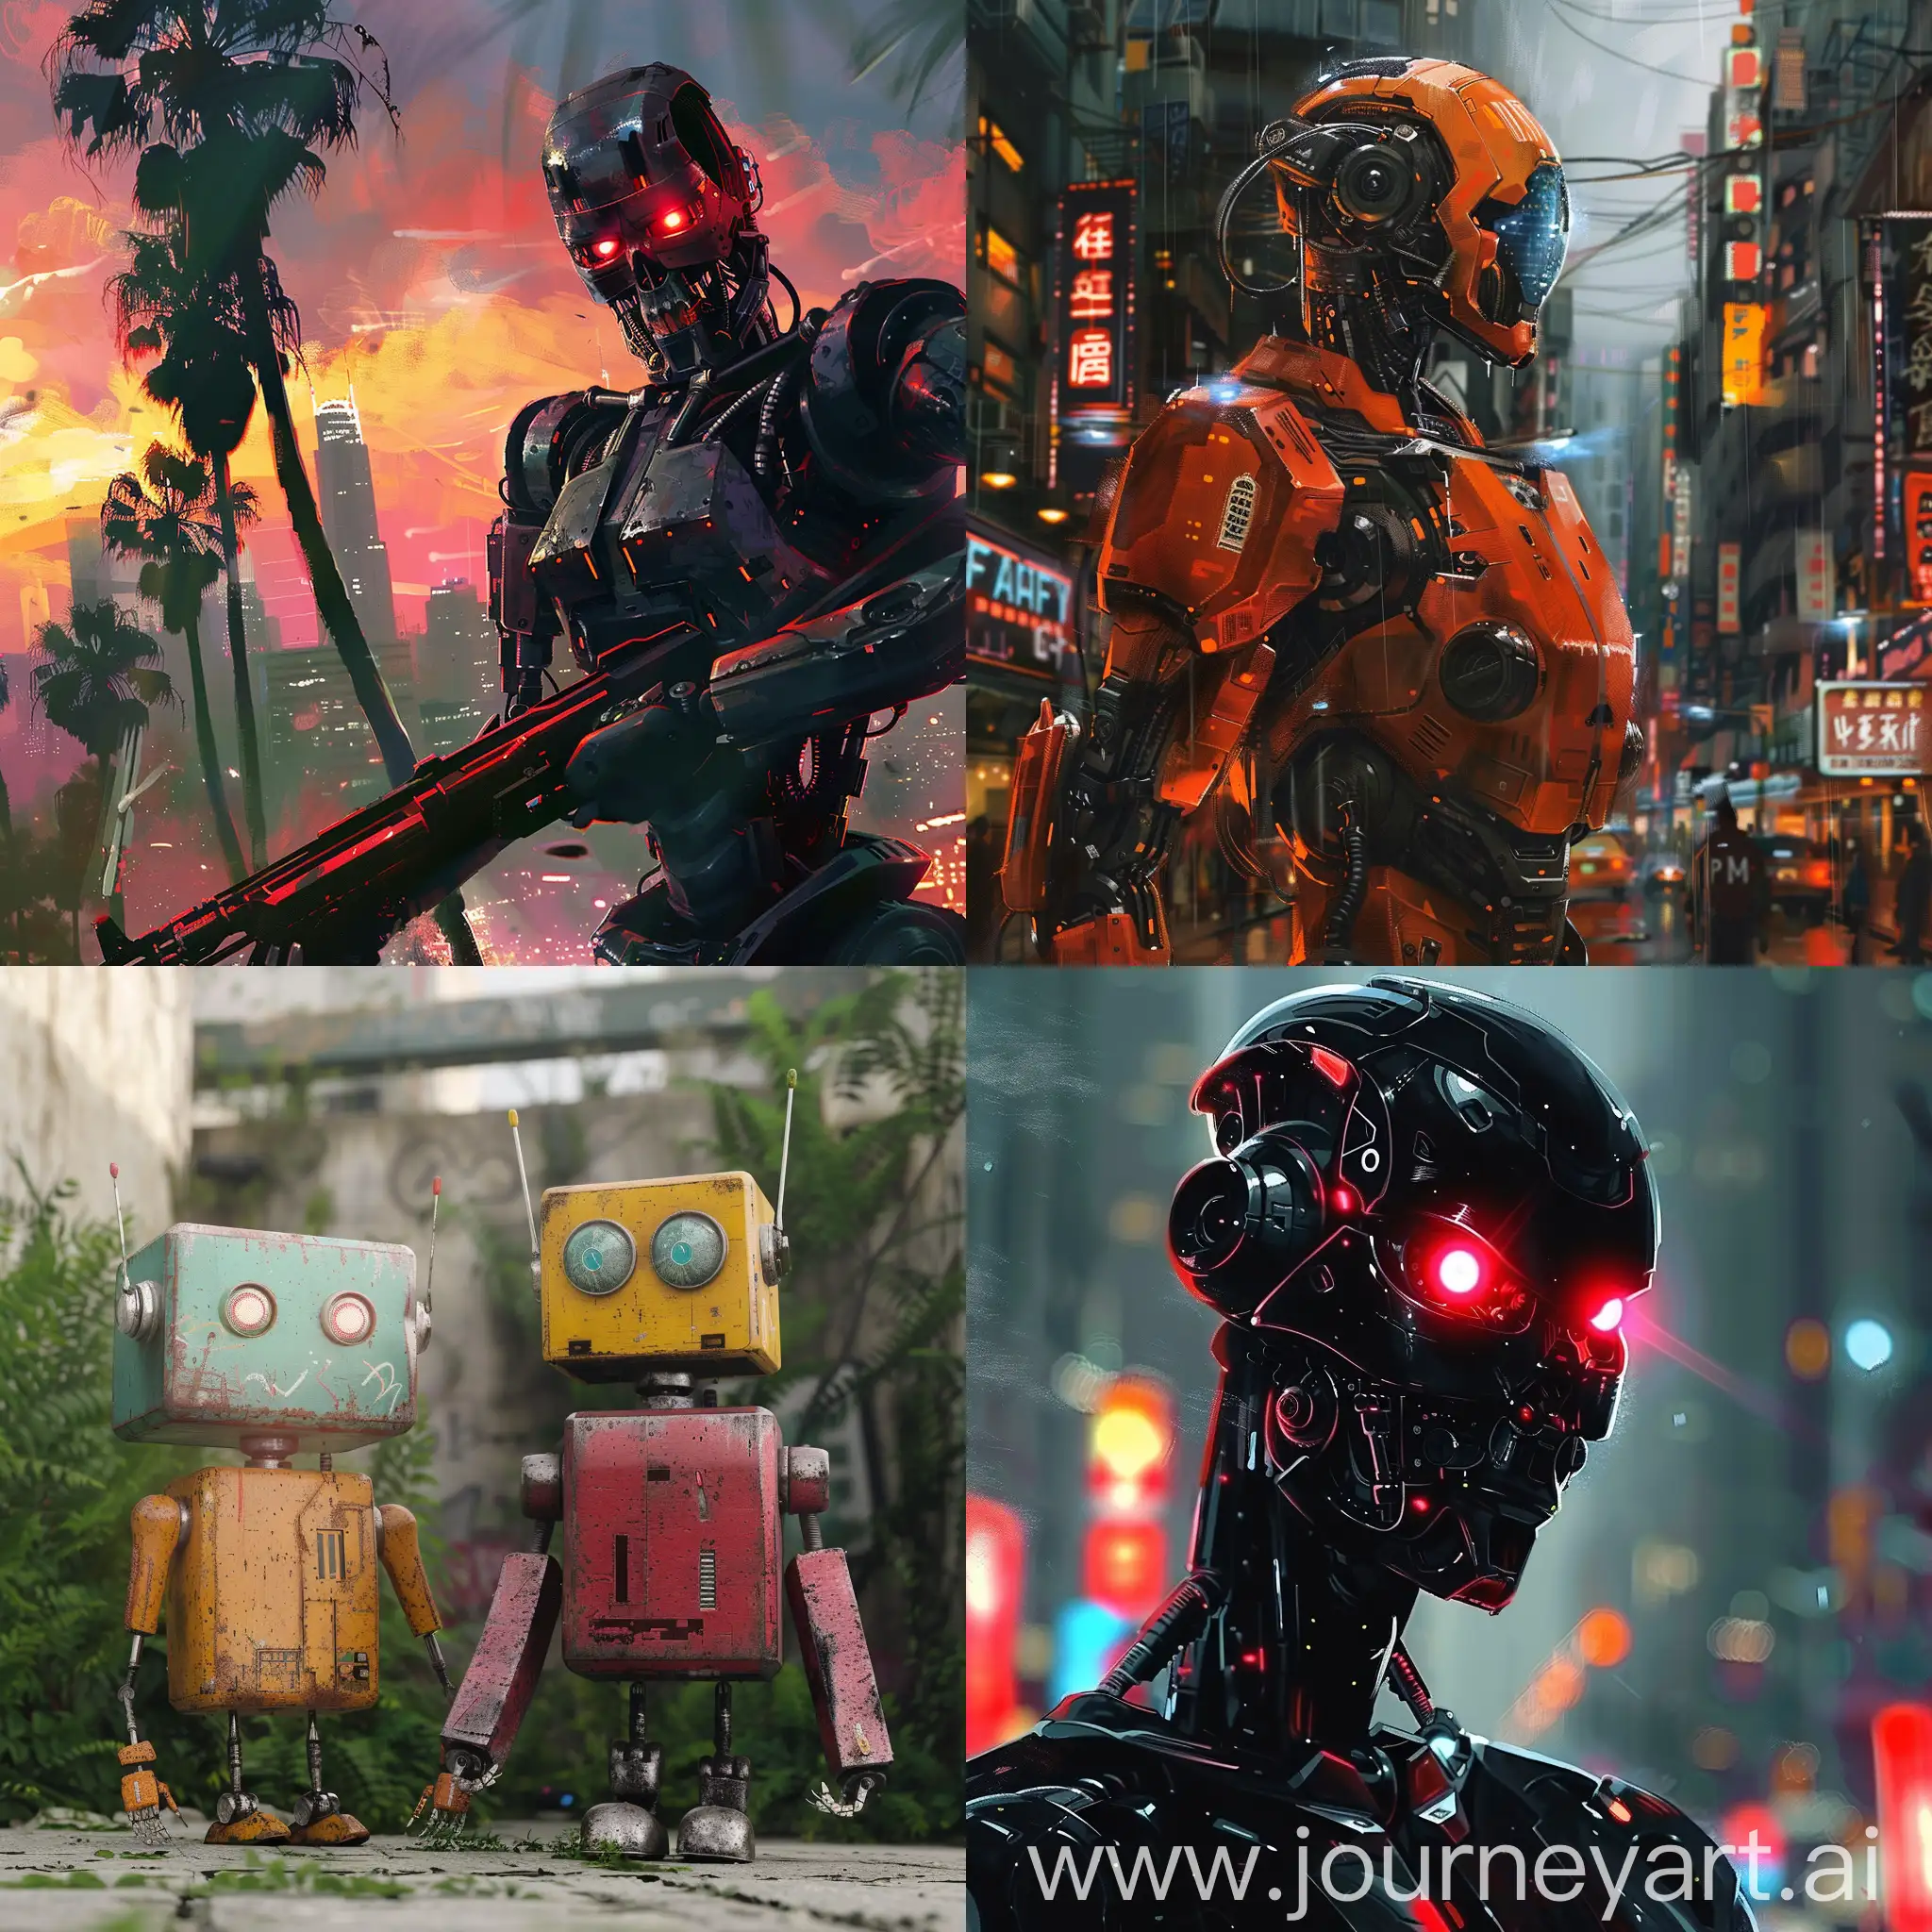  robots in GTA art style
